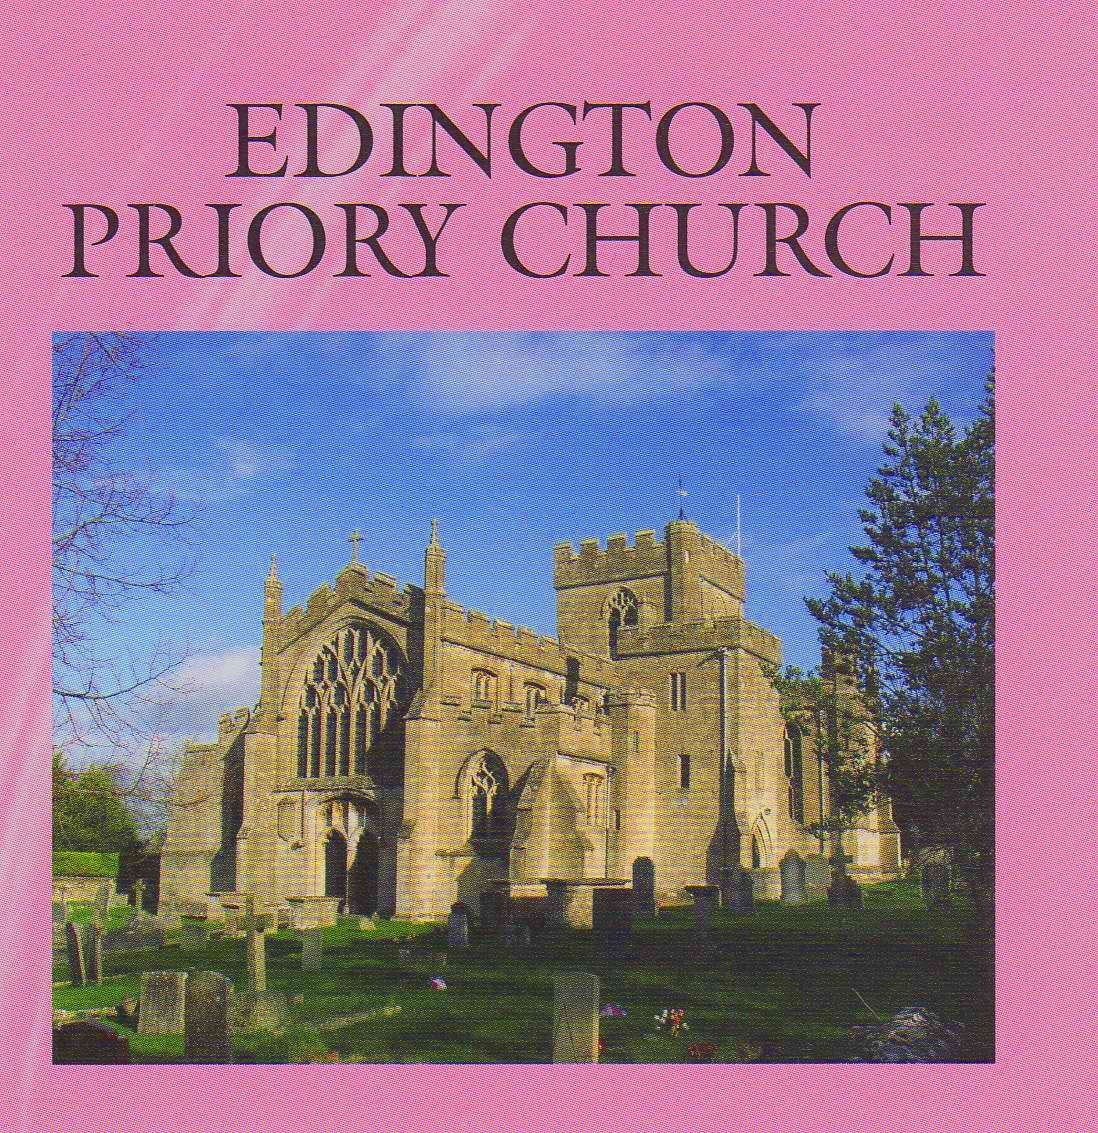 Edington Priory - Course Venue